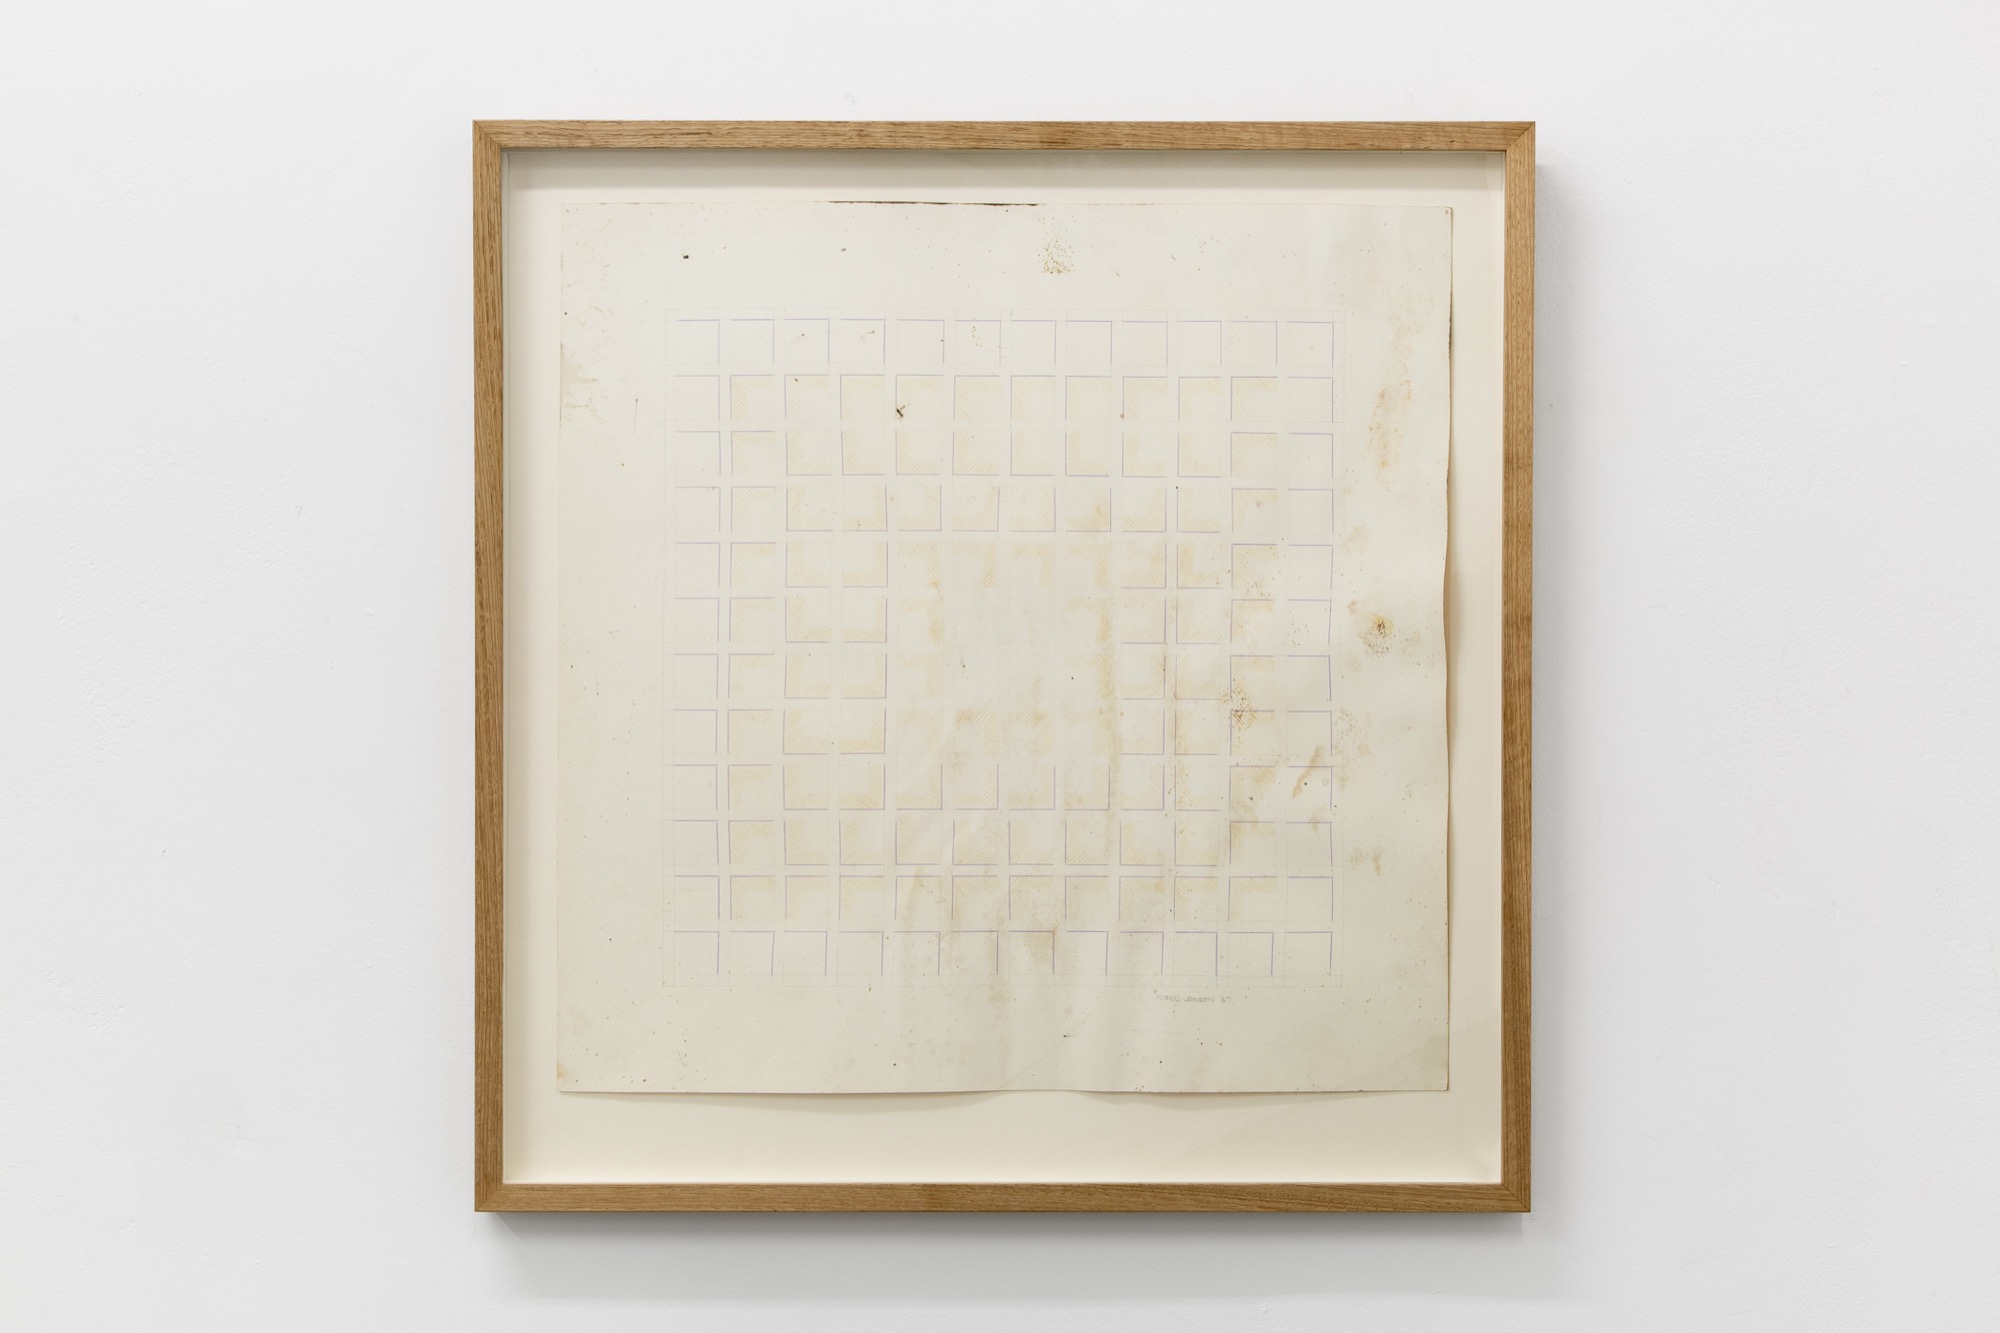 Lucina Lane / Nigel Lendon, <em>Bump</em>, 1967-2018, Nigel Lendon untitled drawing 1967, framed, 61.8 x 60 cm. Photo: Christo Crocker